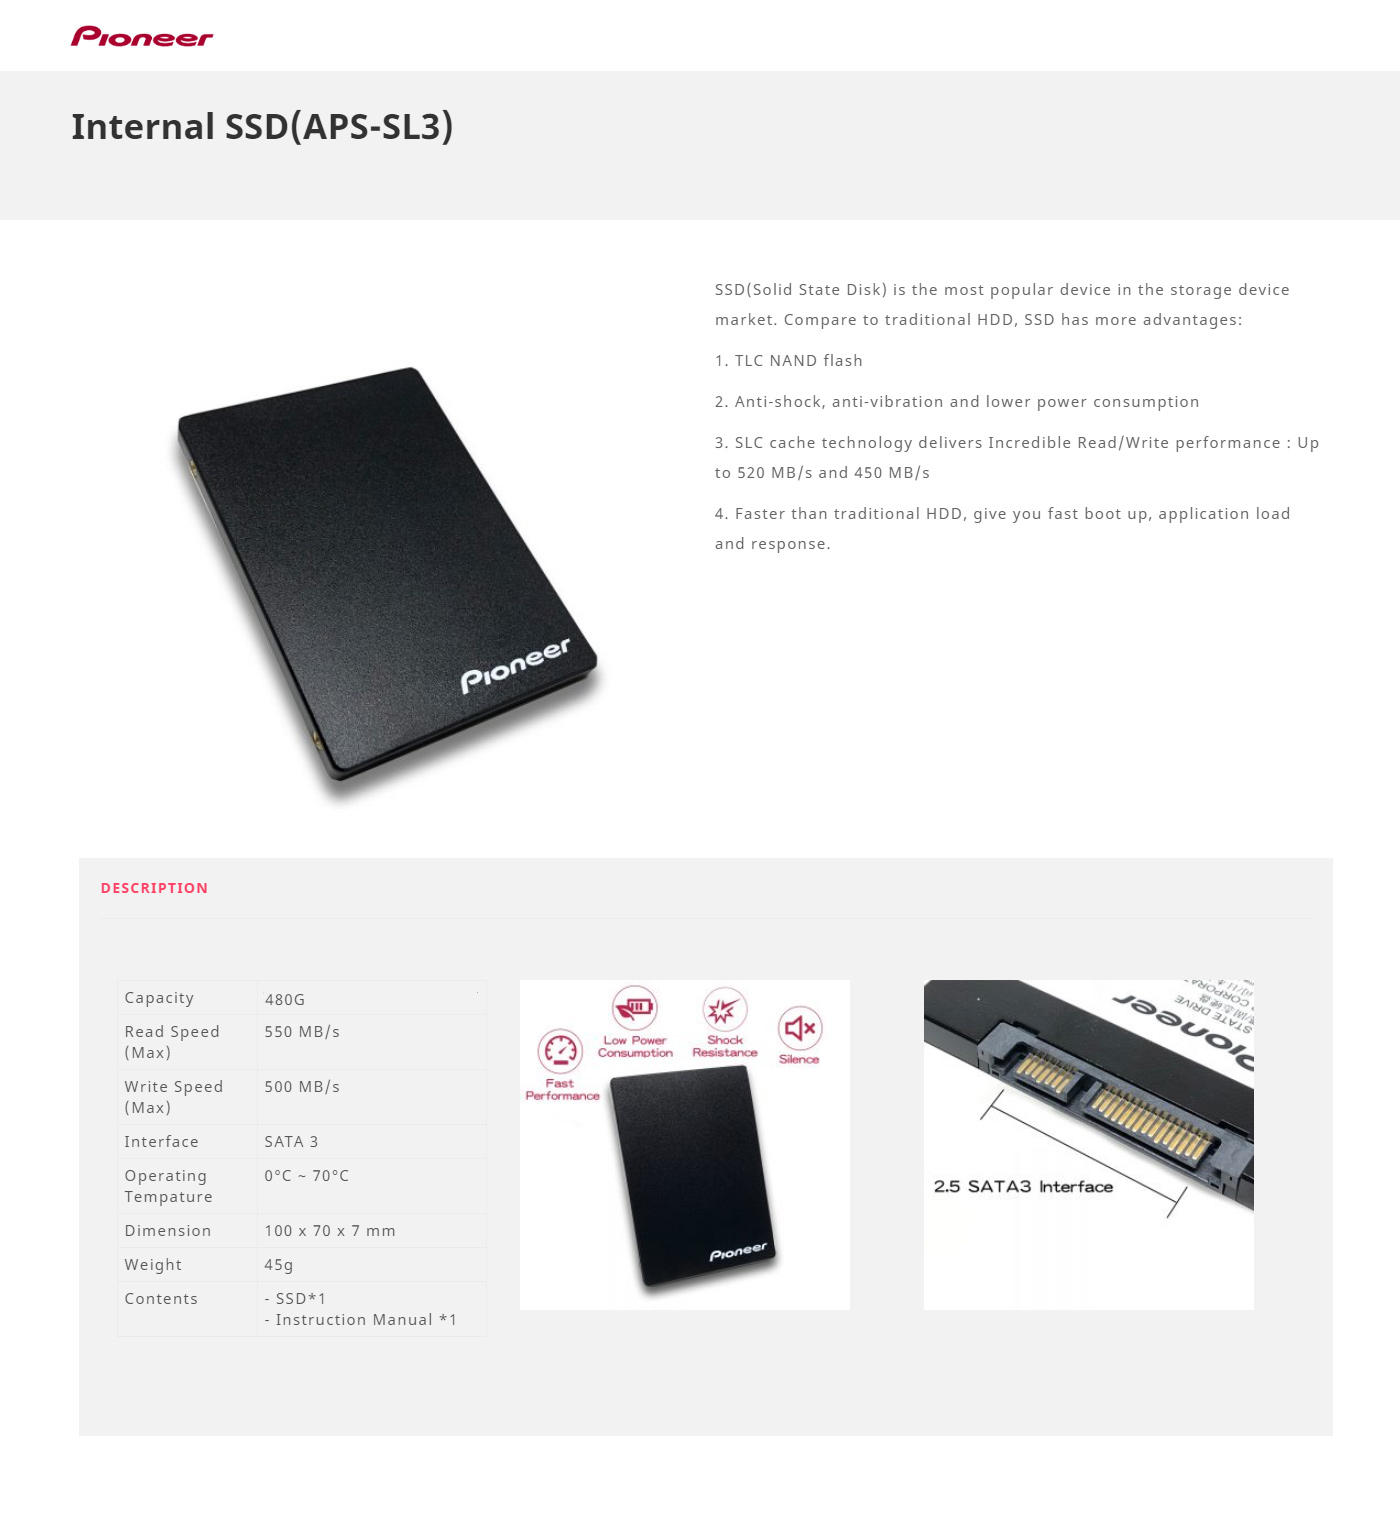 Buy Online Pioneer 480GB SATA Internal Solid State Drive (APS-SL3N-480)